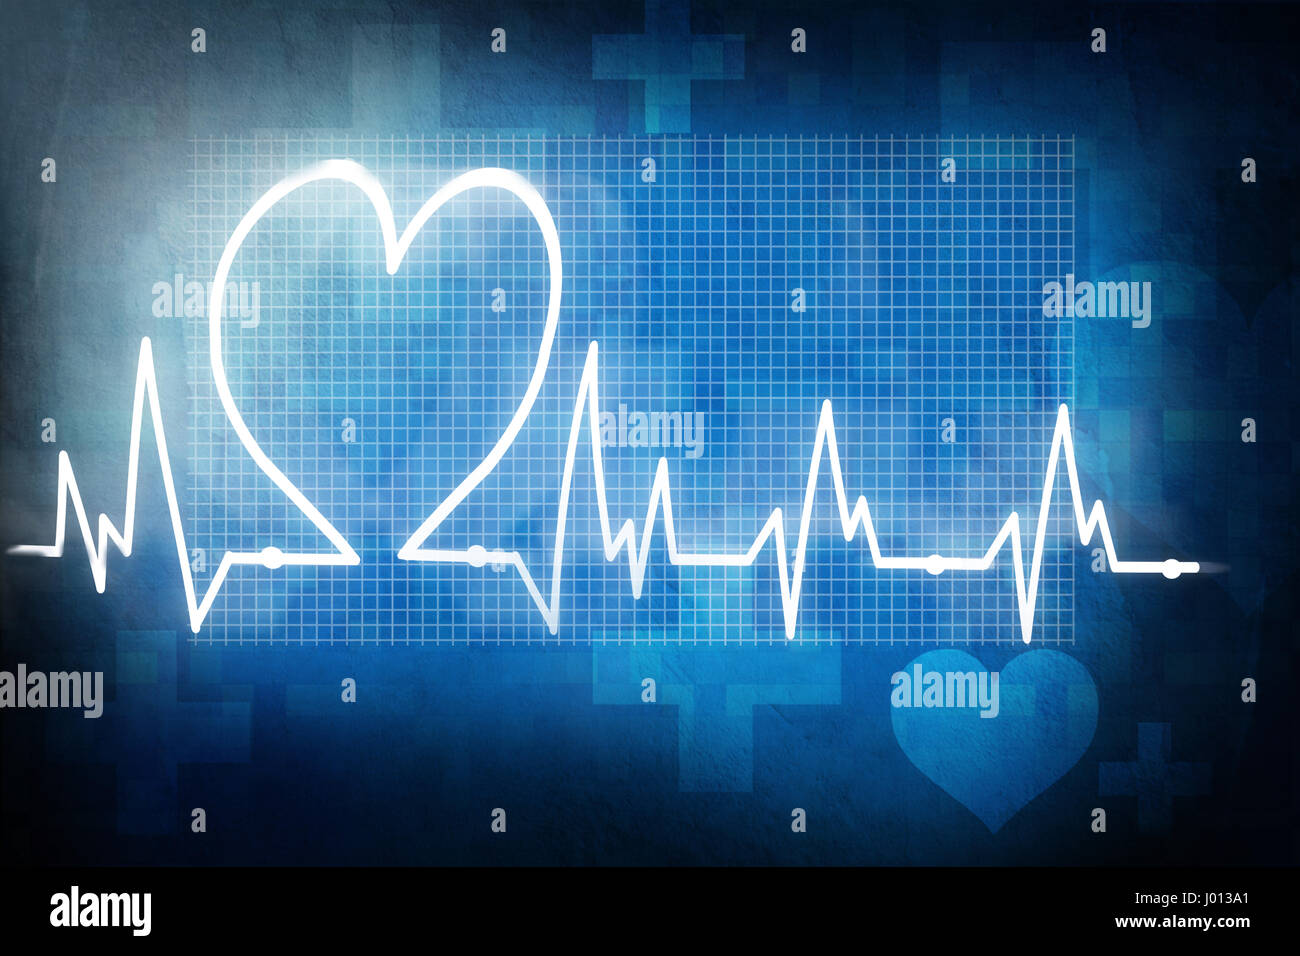 Frecuencia cardiaca electrocardiograma realizado Foto de stock